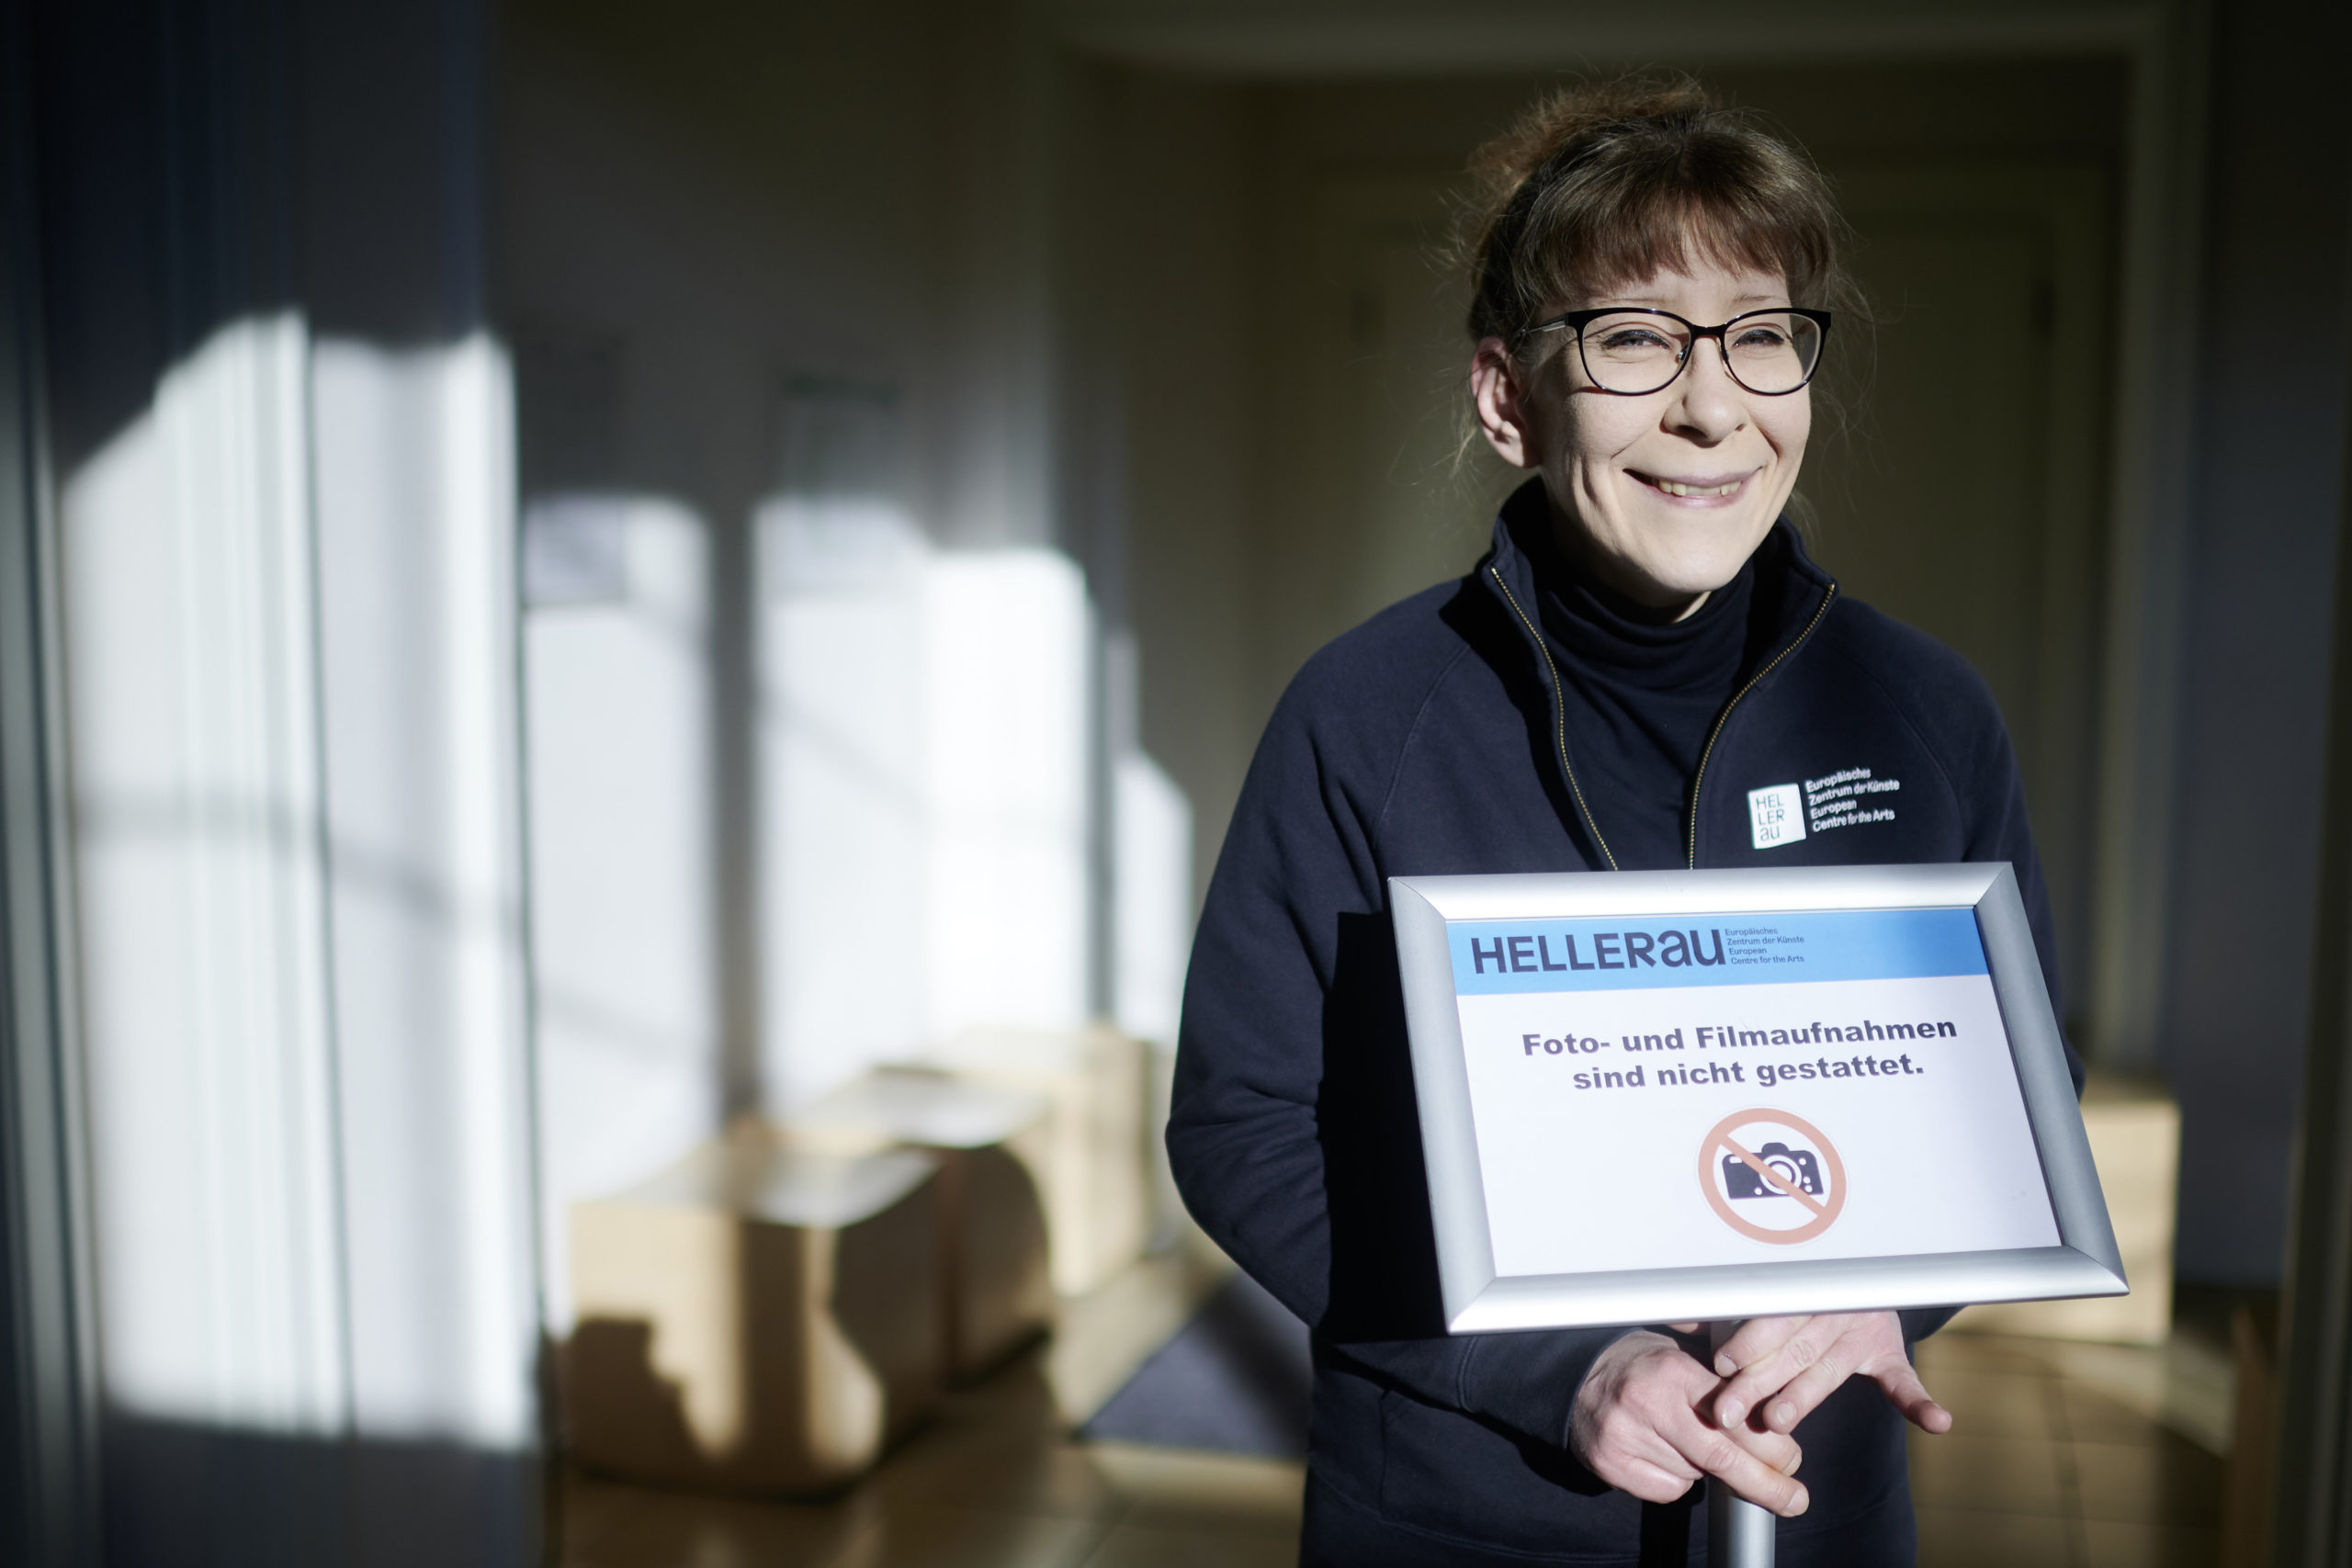 Faces in HELLERAU – Sybille Grießbach, Facility Manager of POWER PERSONEN-OBJEKT-WERKSCHUTZ GmbH, #1 – 2020